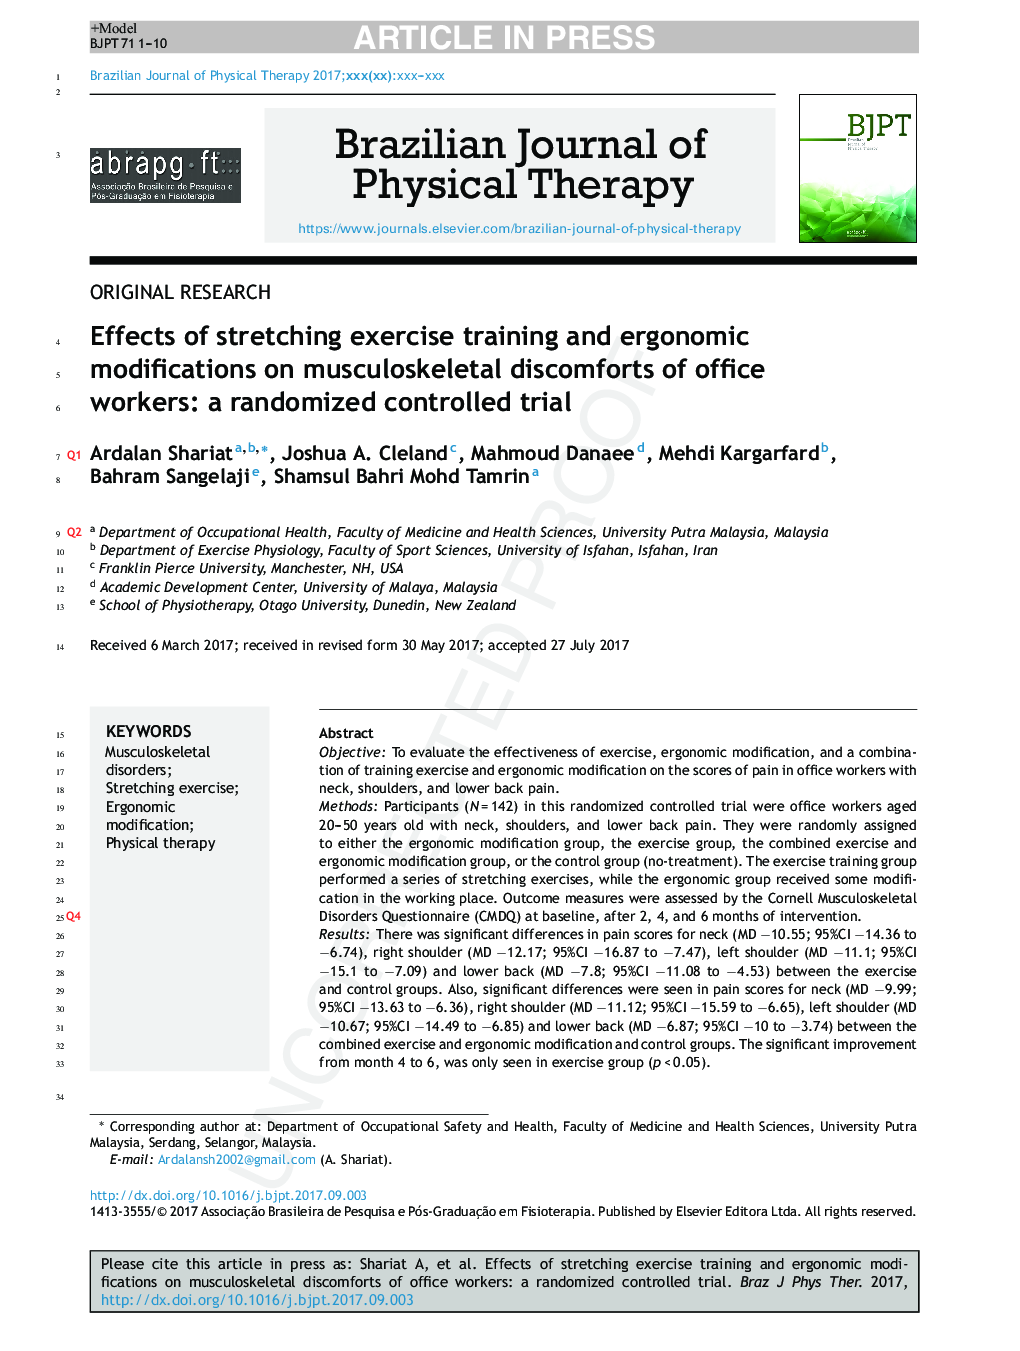 تأثیر تمرینات کششی و تغییرات ارگونومیک در ناراحتی های اسکلتی عضلانی کارکنان اداری: یک کارآزمایی کنترل شده تصادفی